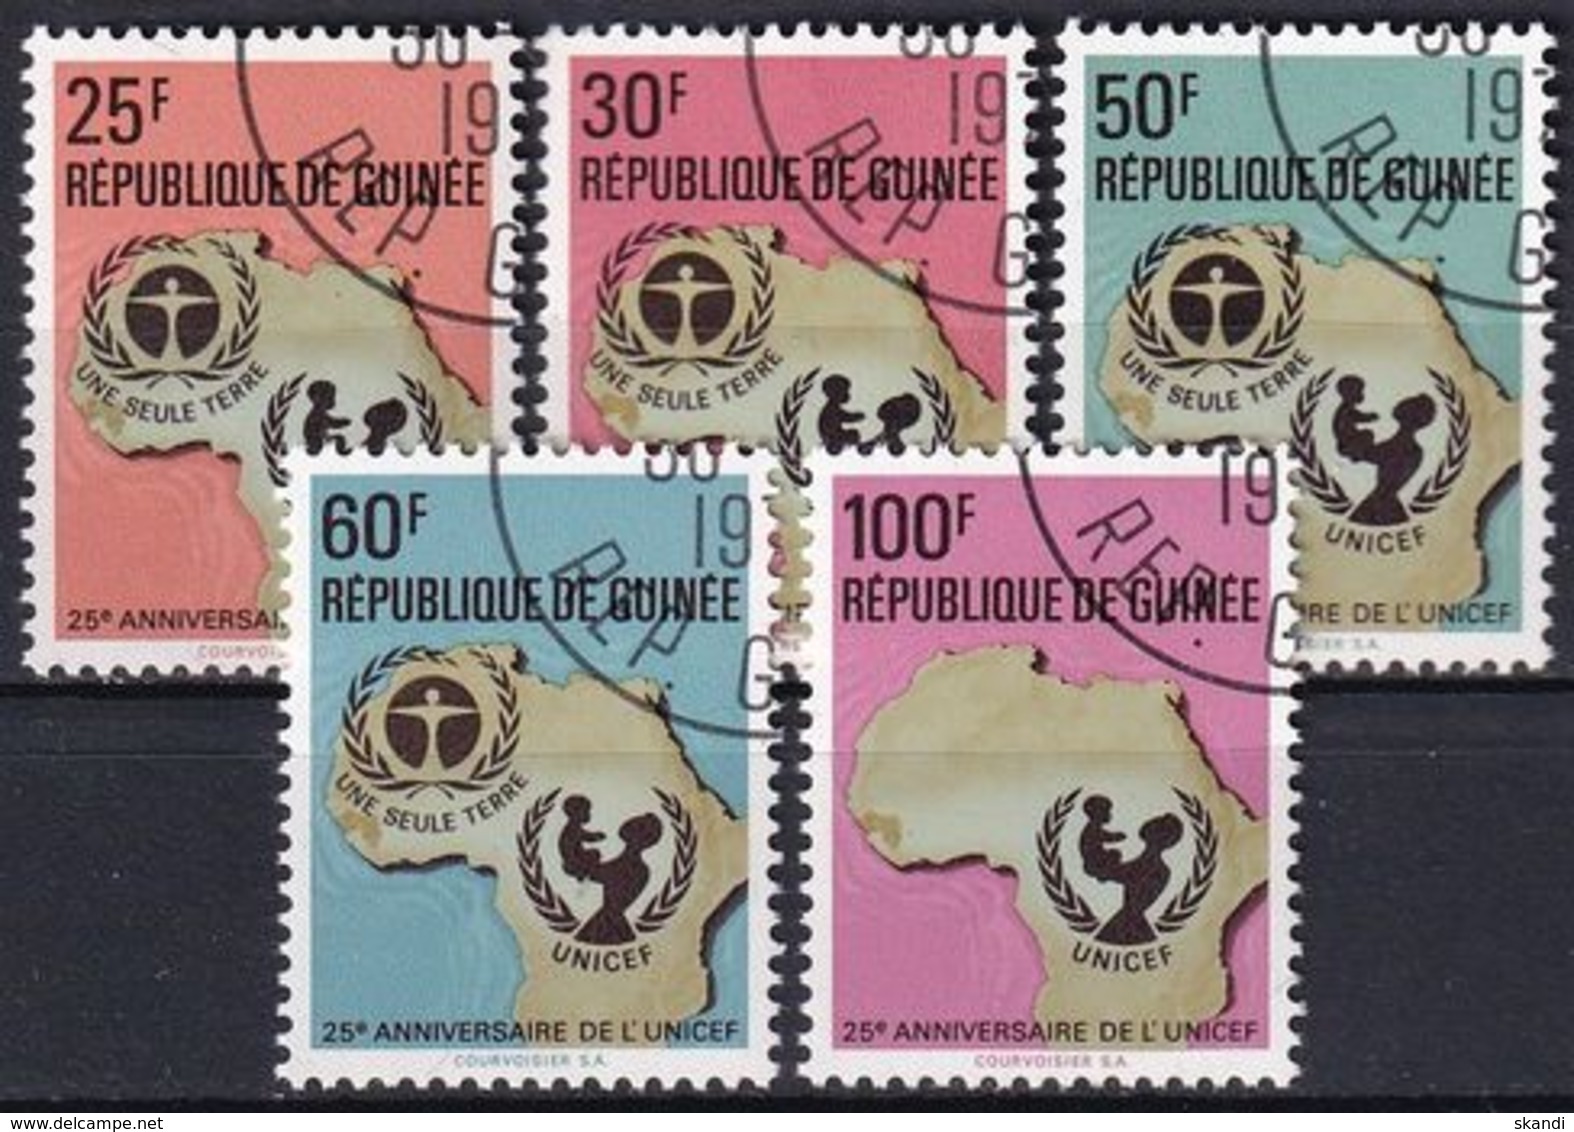 GUINEA 1972 Mi-Nr. 654/58 O Used - Aus Abo - Guinea (1958-...)